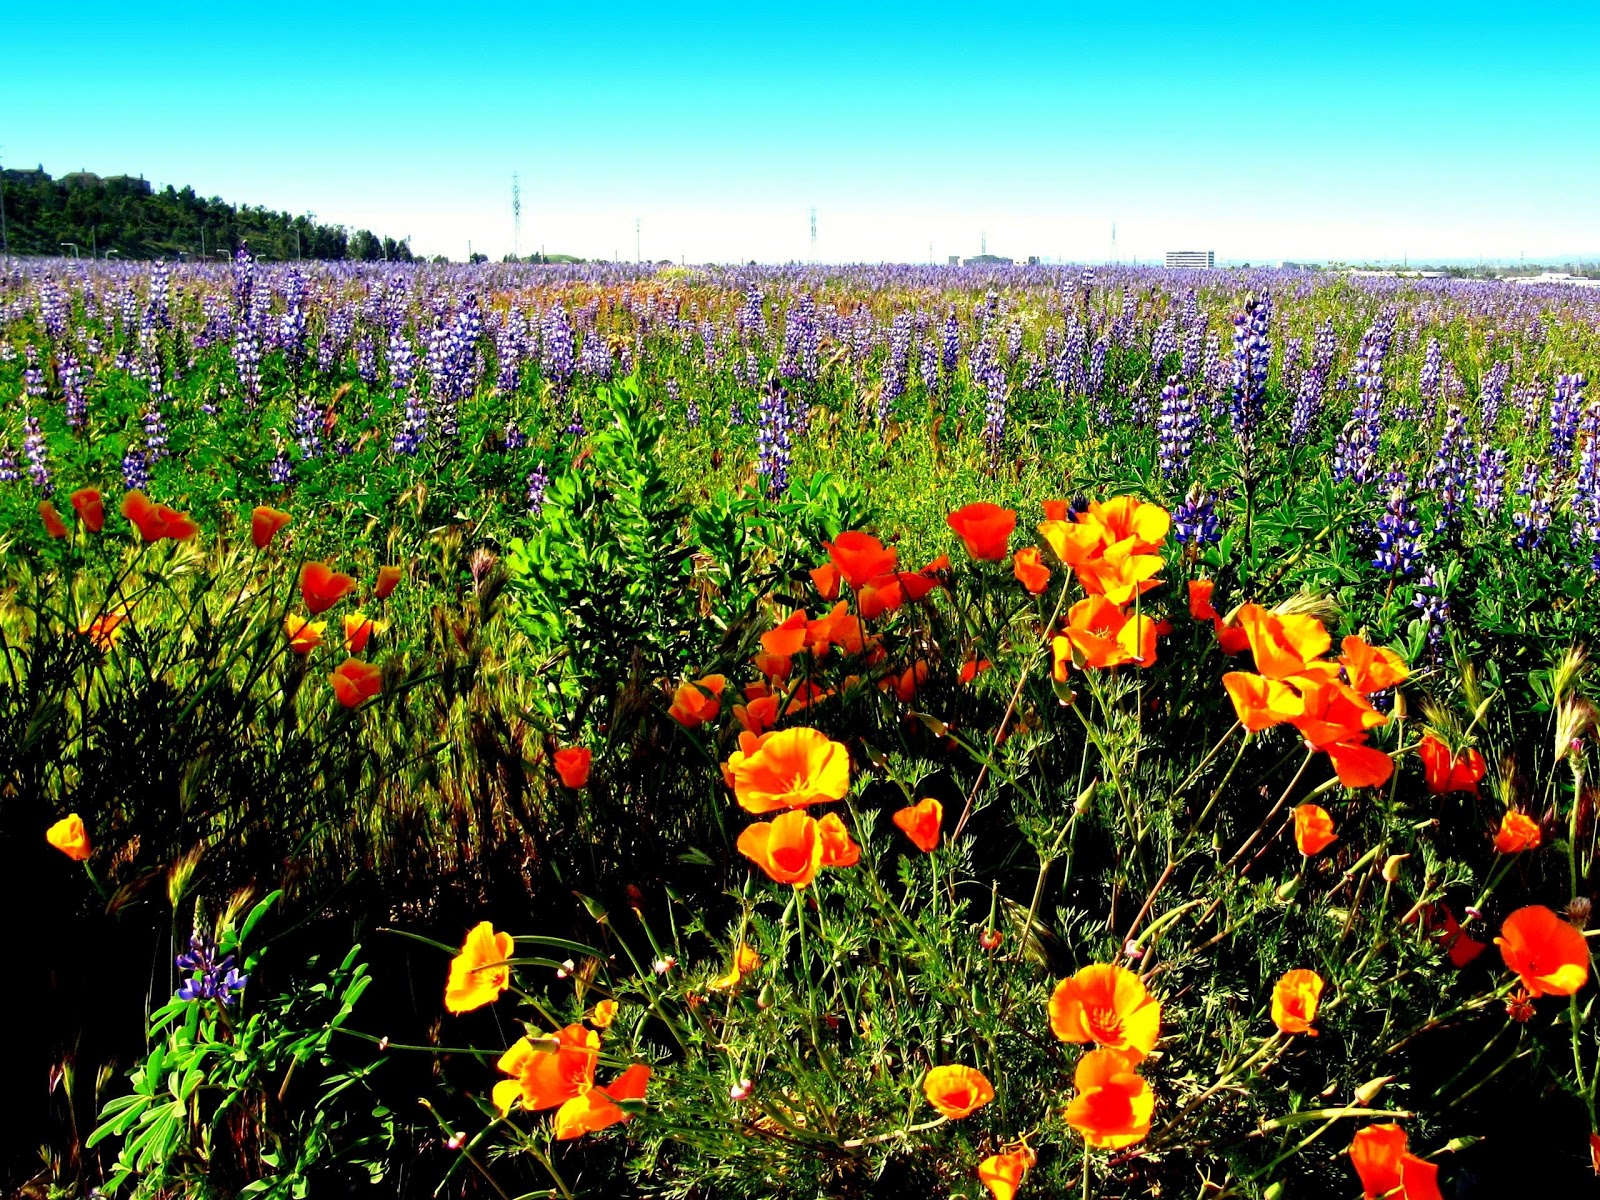 California Poppy State Flower Landscape Wallpaper Irvine Ca Usa Jpg